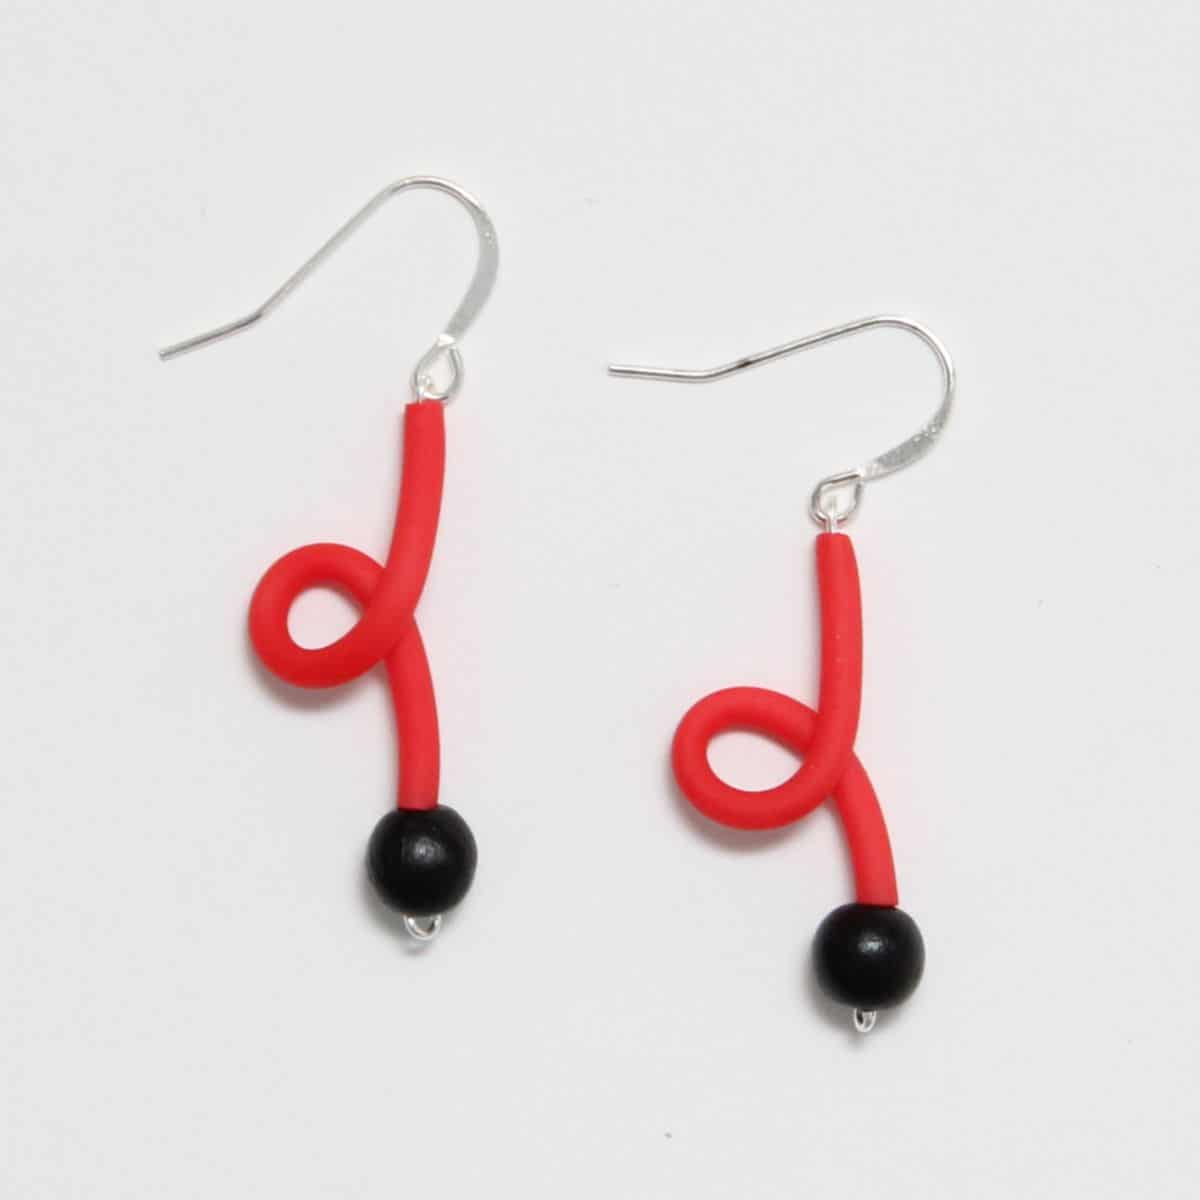 Red rubber tube earrings